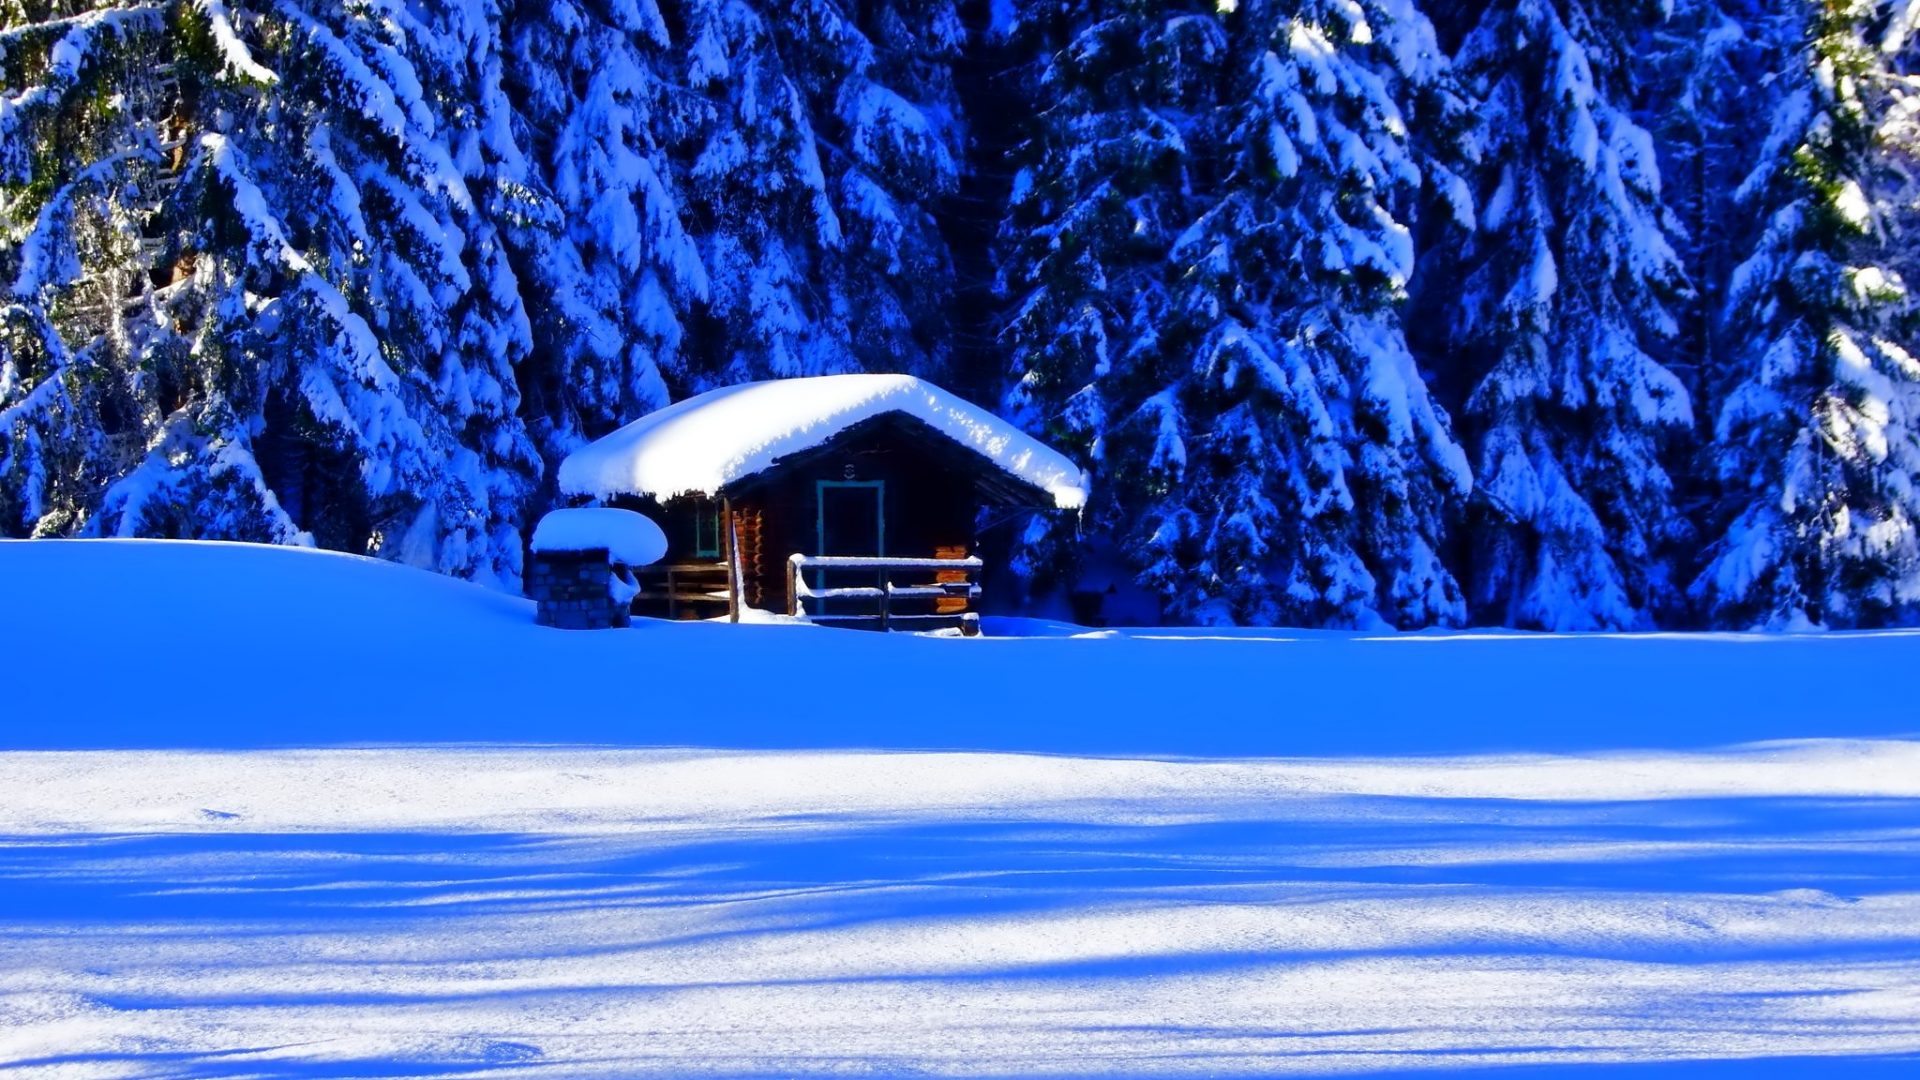 겨울 배경 화면 다운로드,눈,겨울,푸른,자연,나무